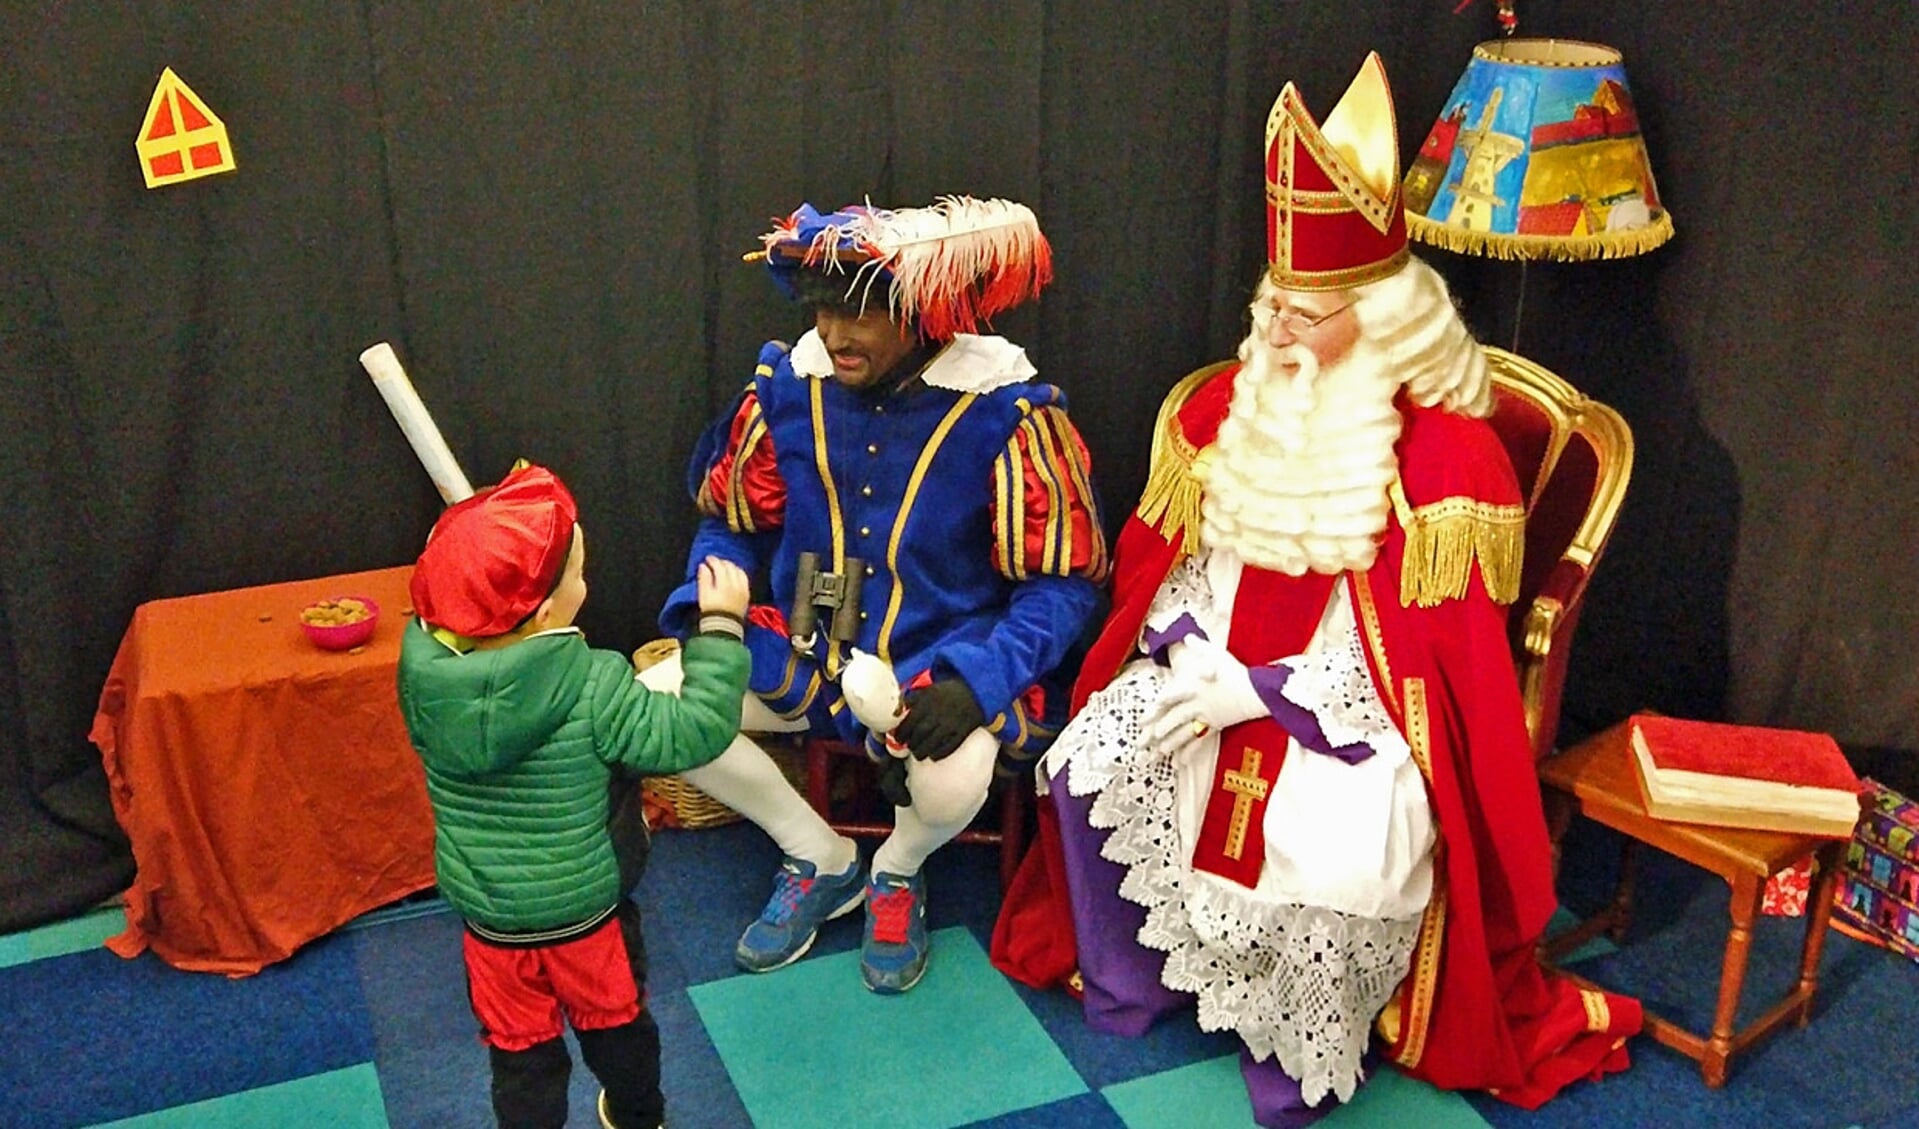 Het Sinterklaasteam wil kinderen uit minima gezinnen verrassen met cadeautjes